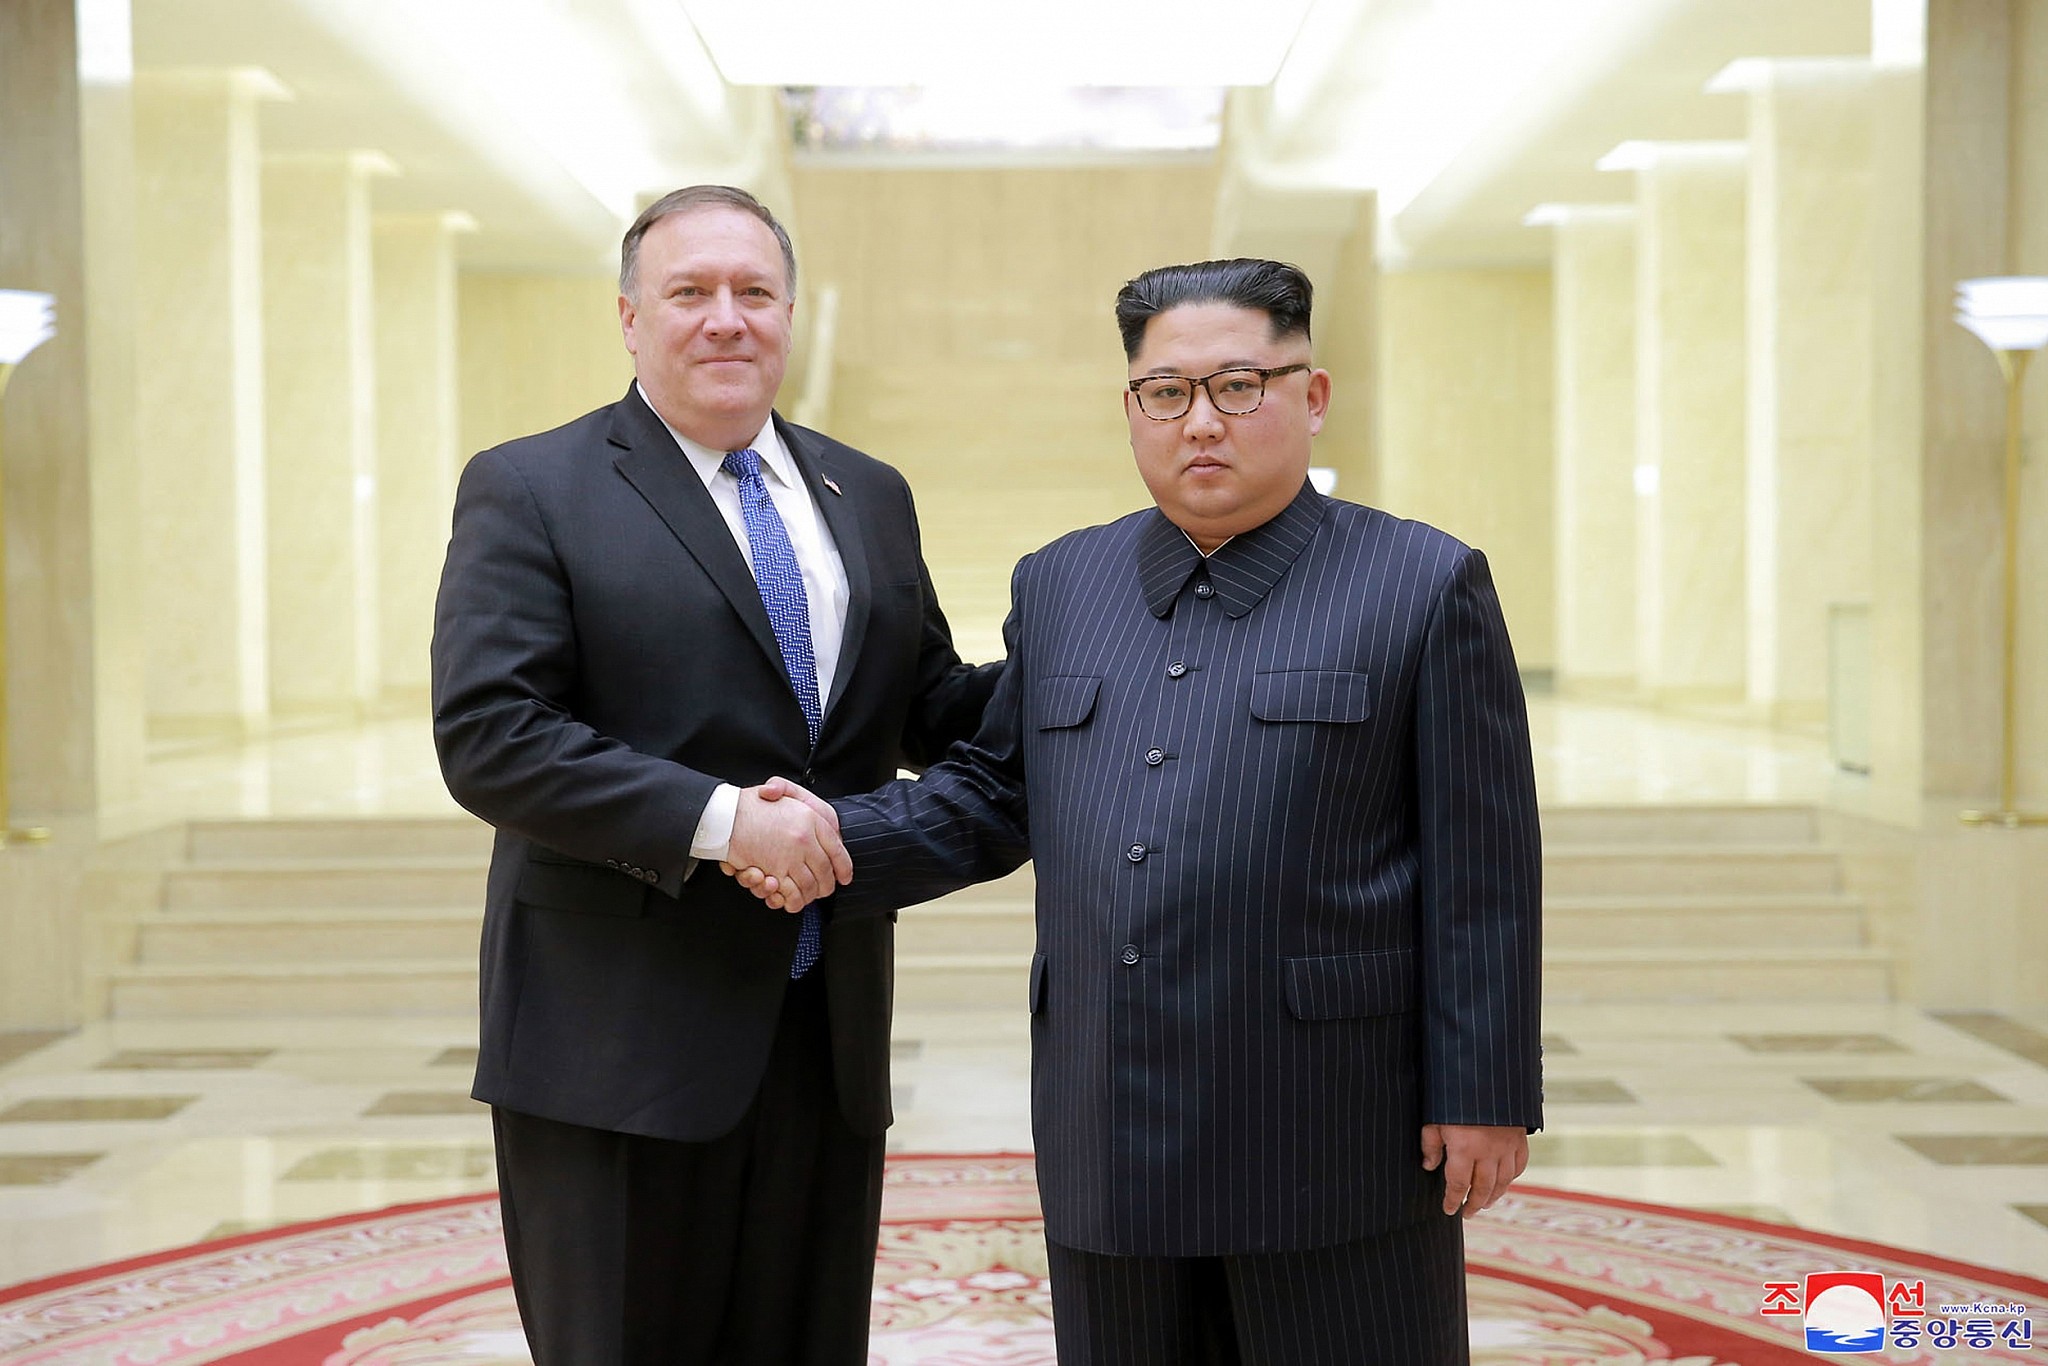 كوريا الشمالية تريد استبدال بومبيو في المحادثات النووية